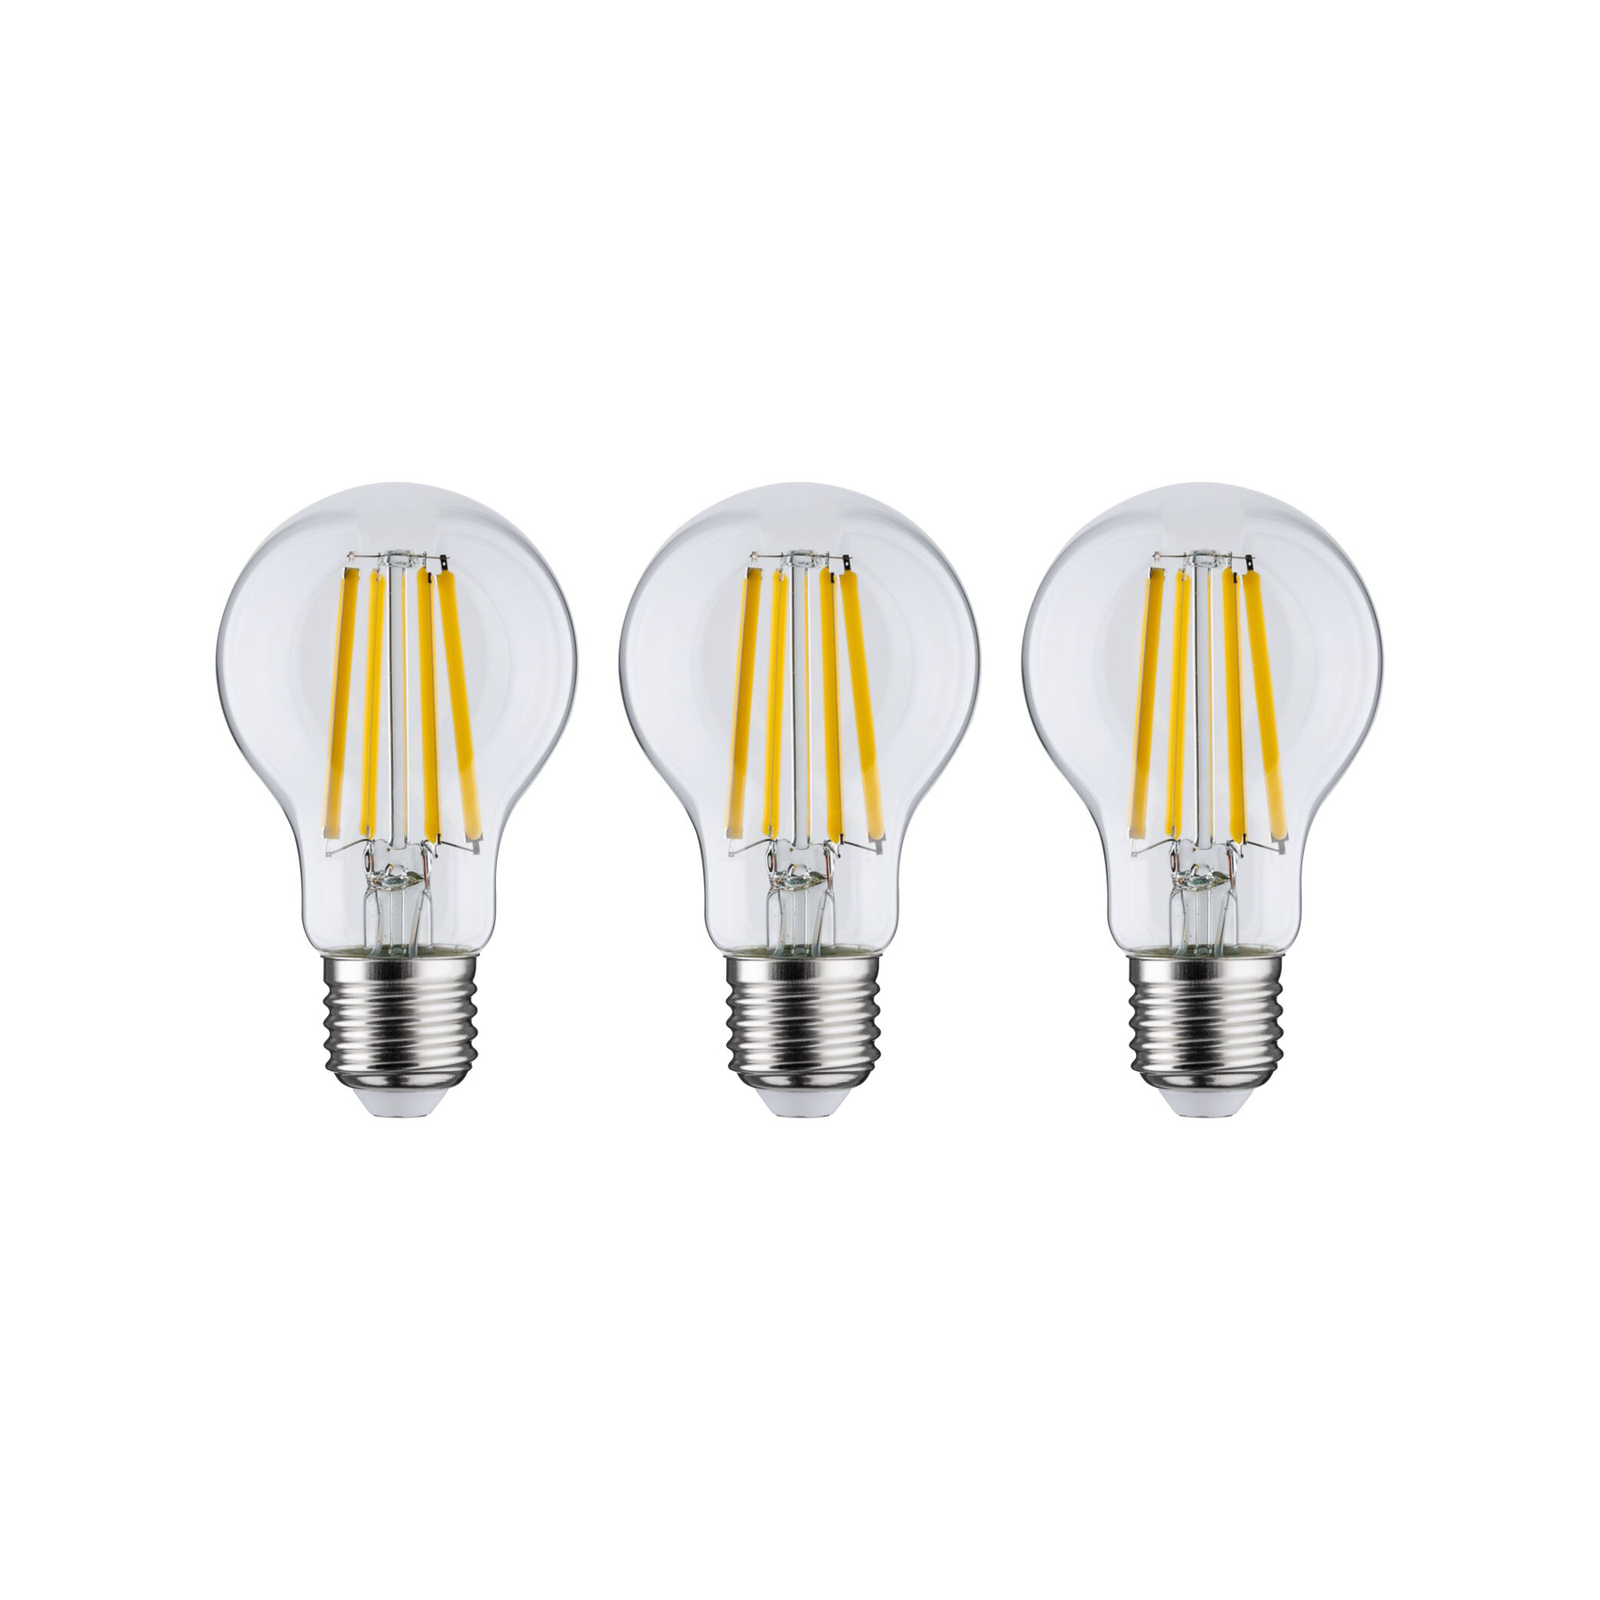 Paulmann Eco-Line LED lamp E27 4W 840lm 3000K p.3